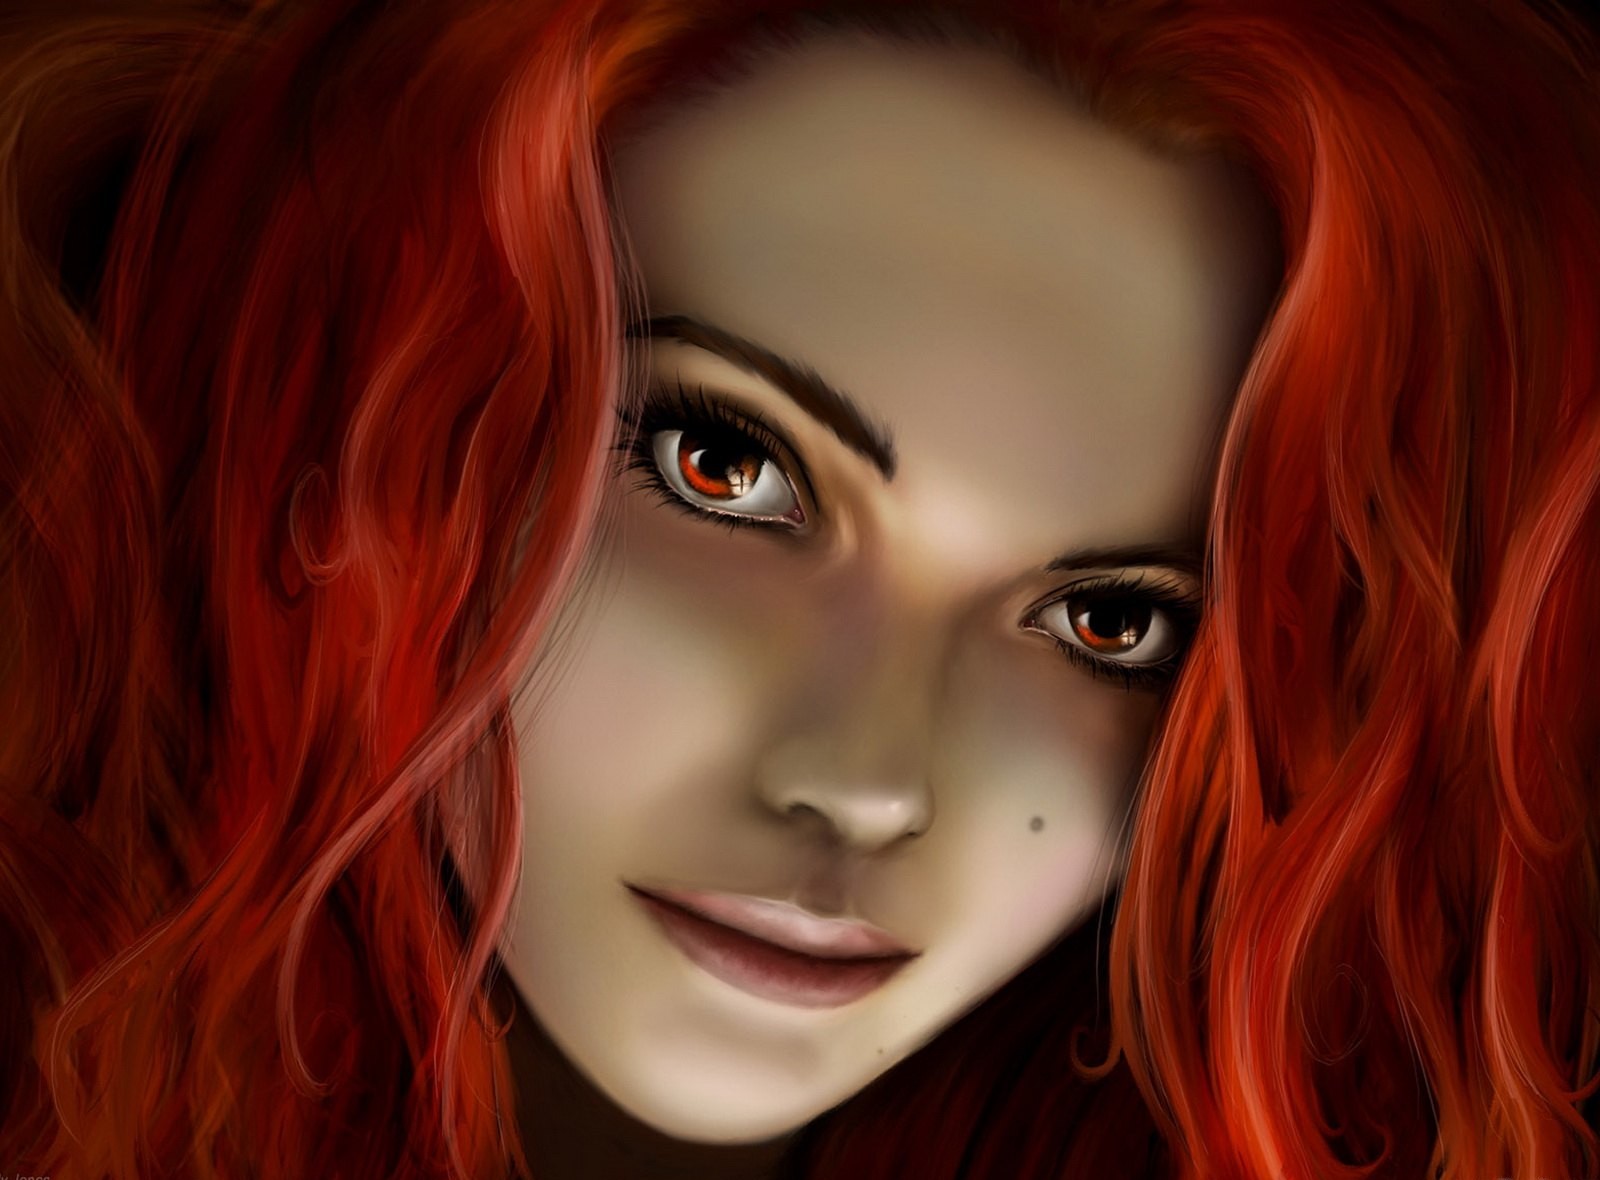 Бестия 4. Рыжая девушка арт. Девушка с рыжими волосами арт. Девушка с рыжими волосами фэнтези.